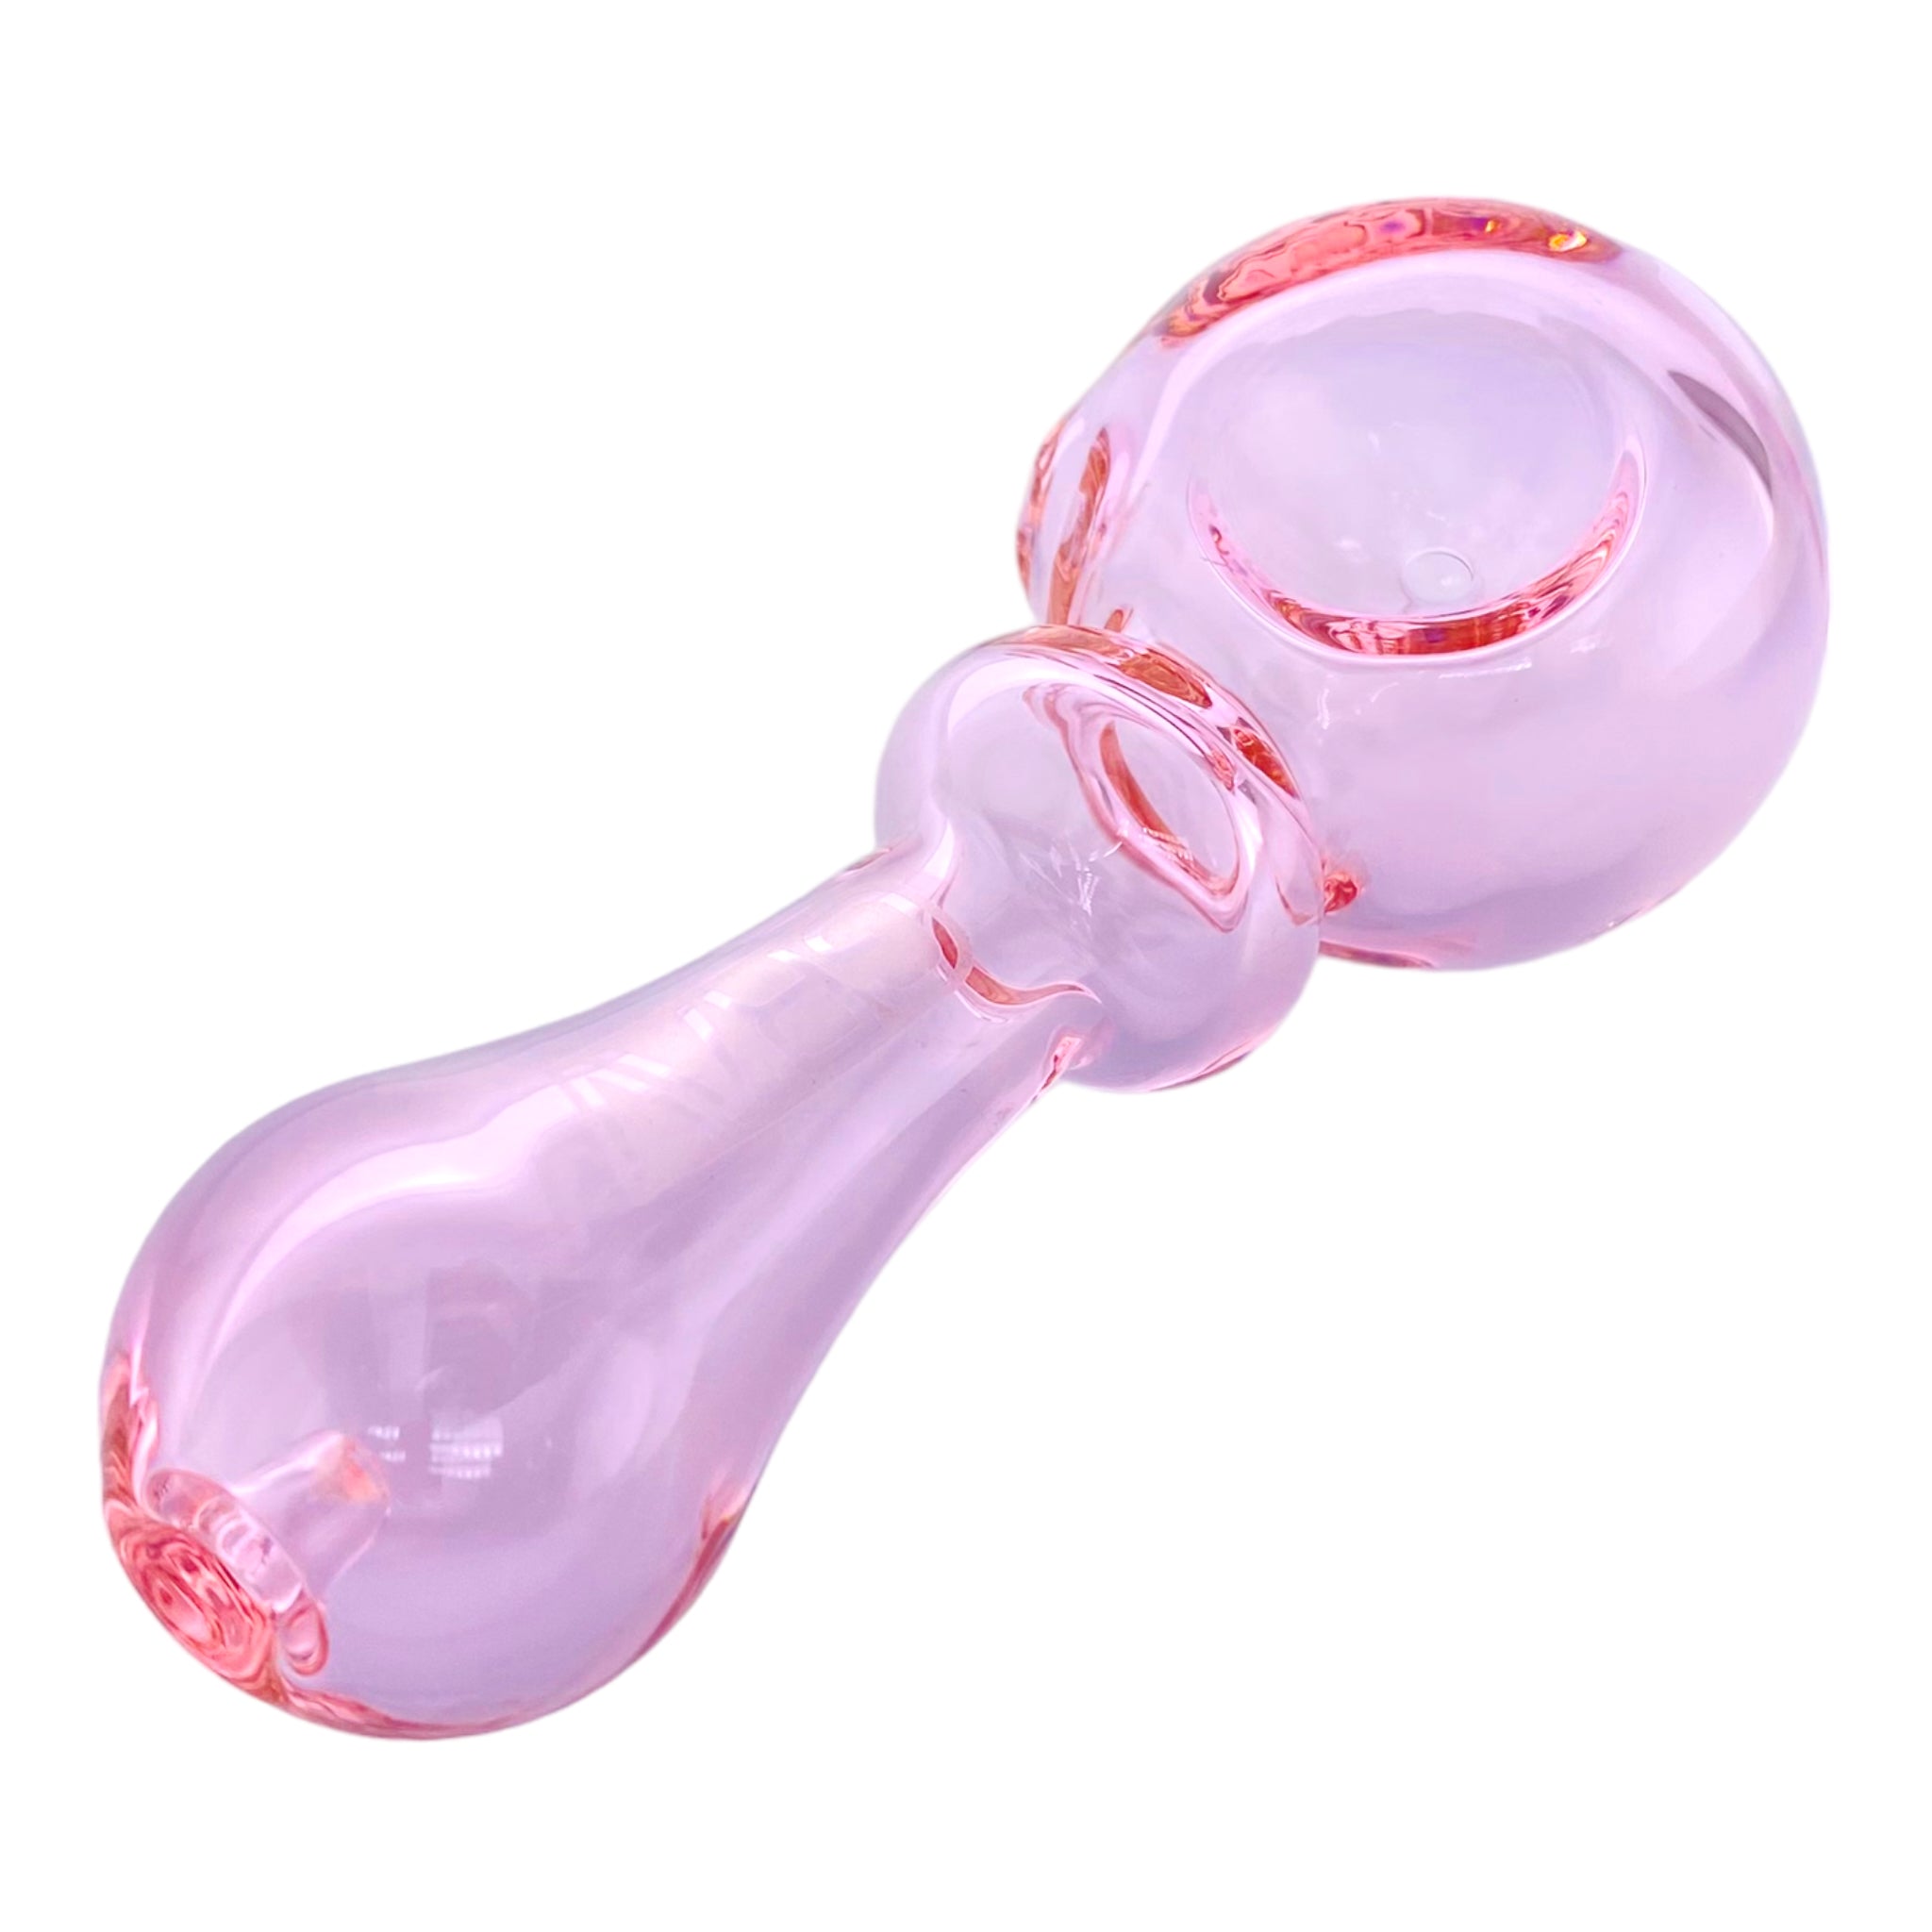 Grav Labs - Bauble Spoon Pipe - Pink